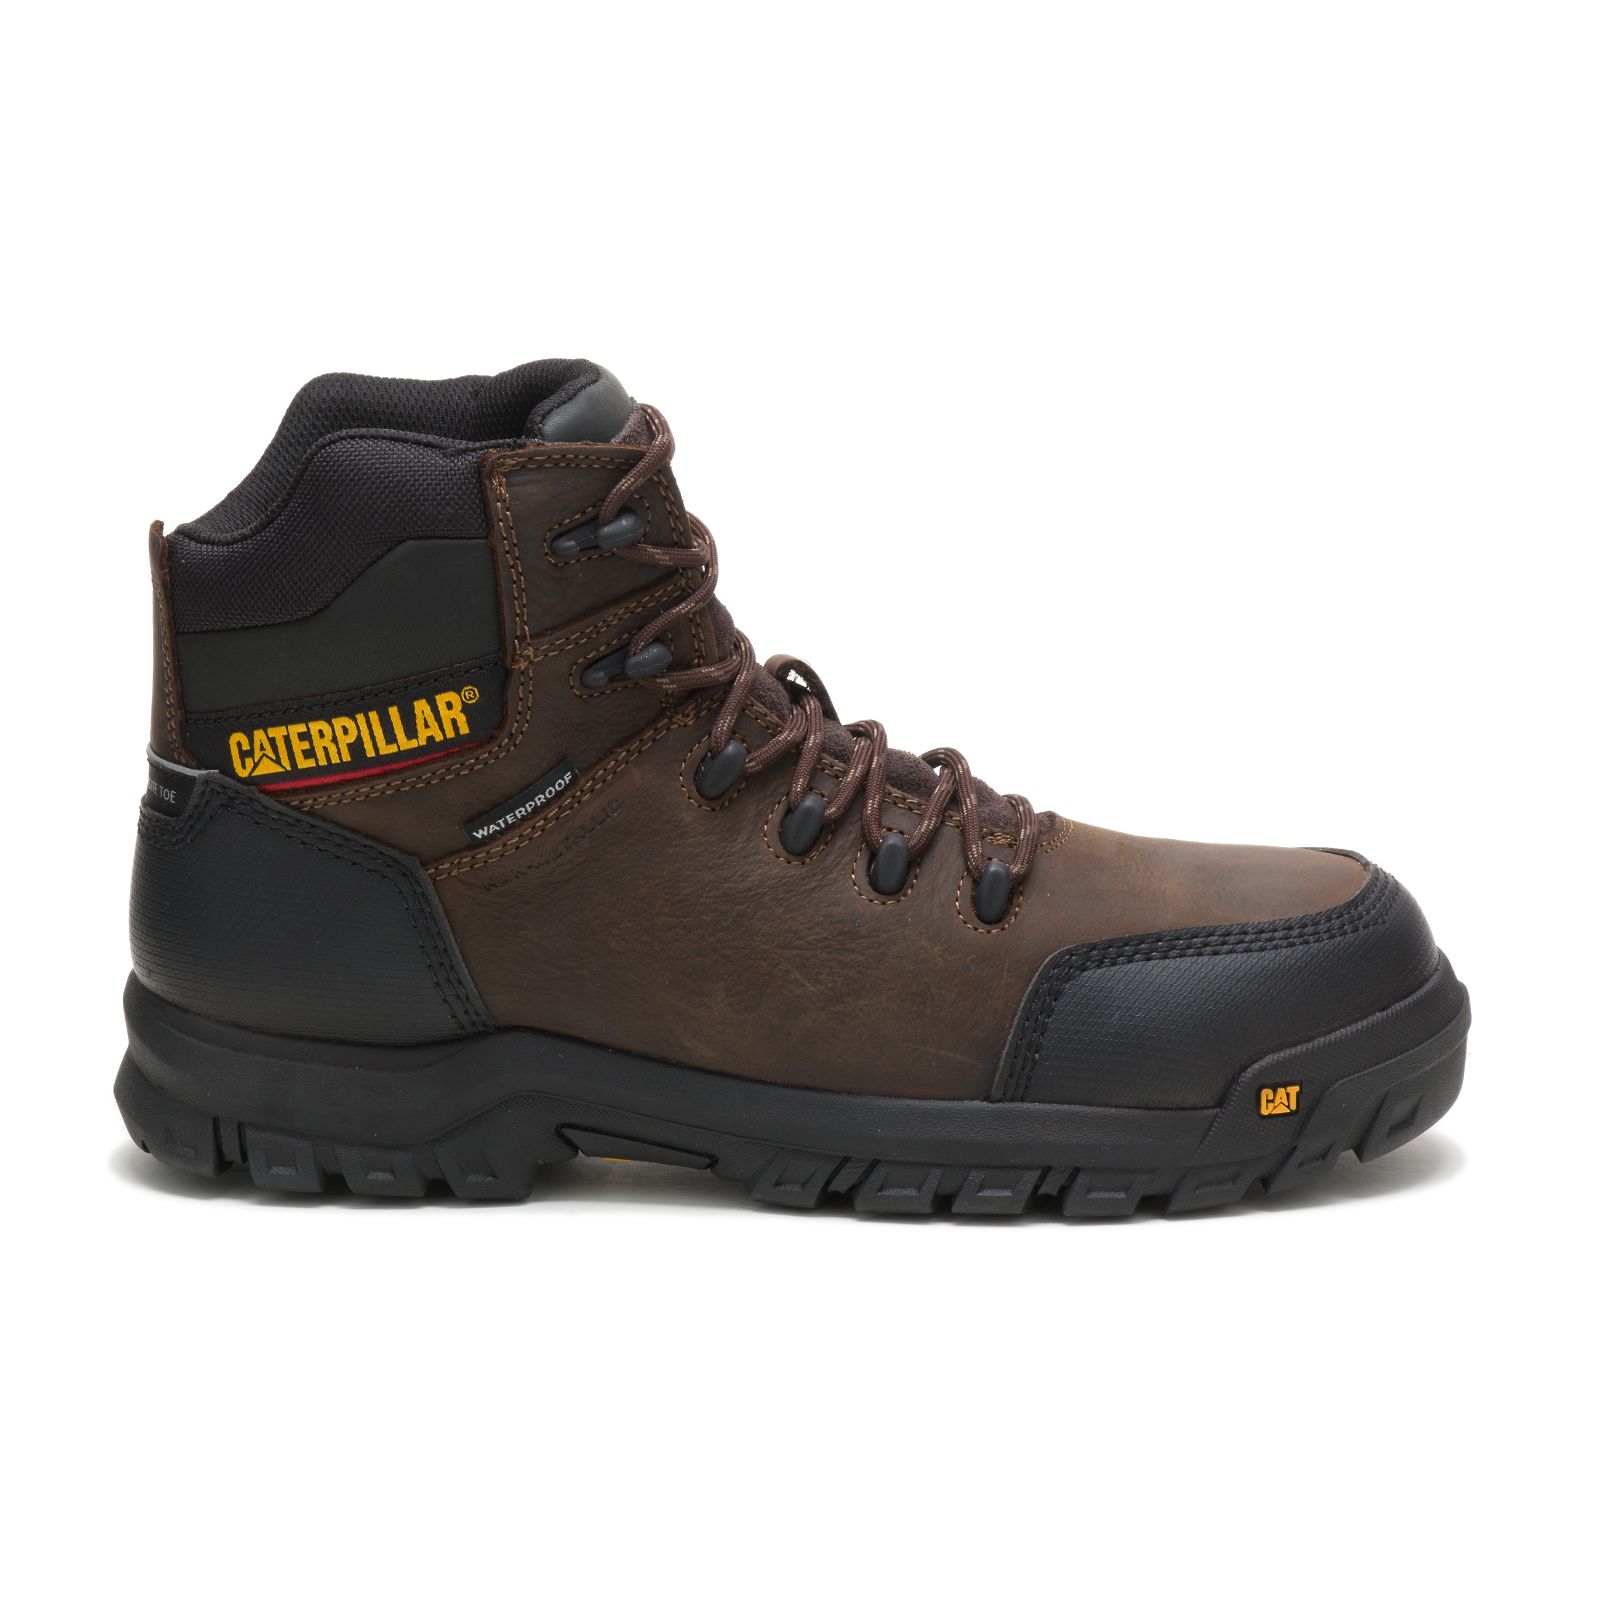 Men's Caterpillar Resorption Waterproof Composite Toe Work Boots Brown | Cat-507236